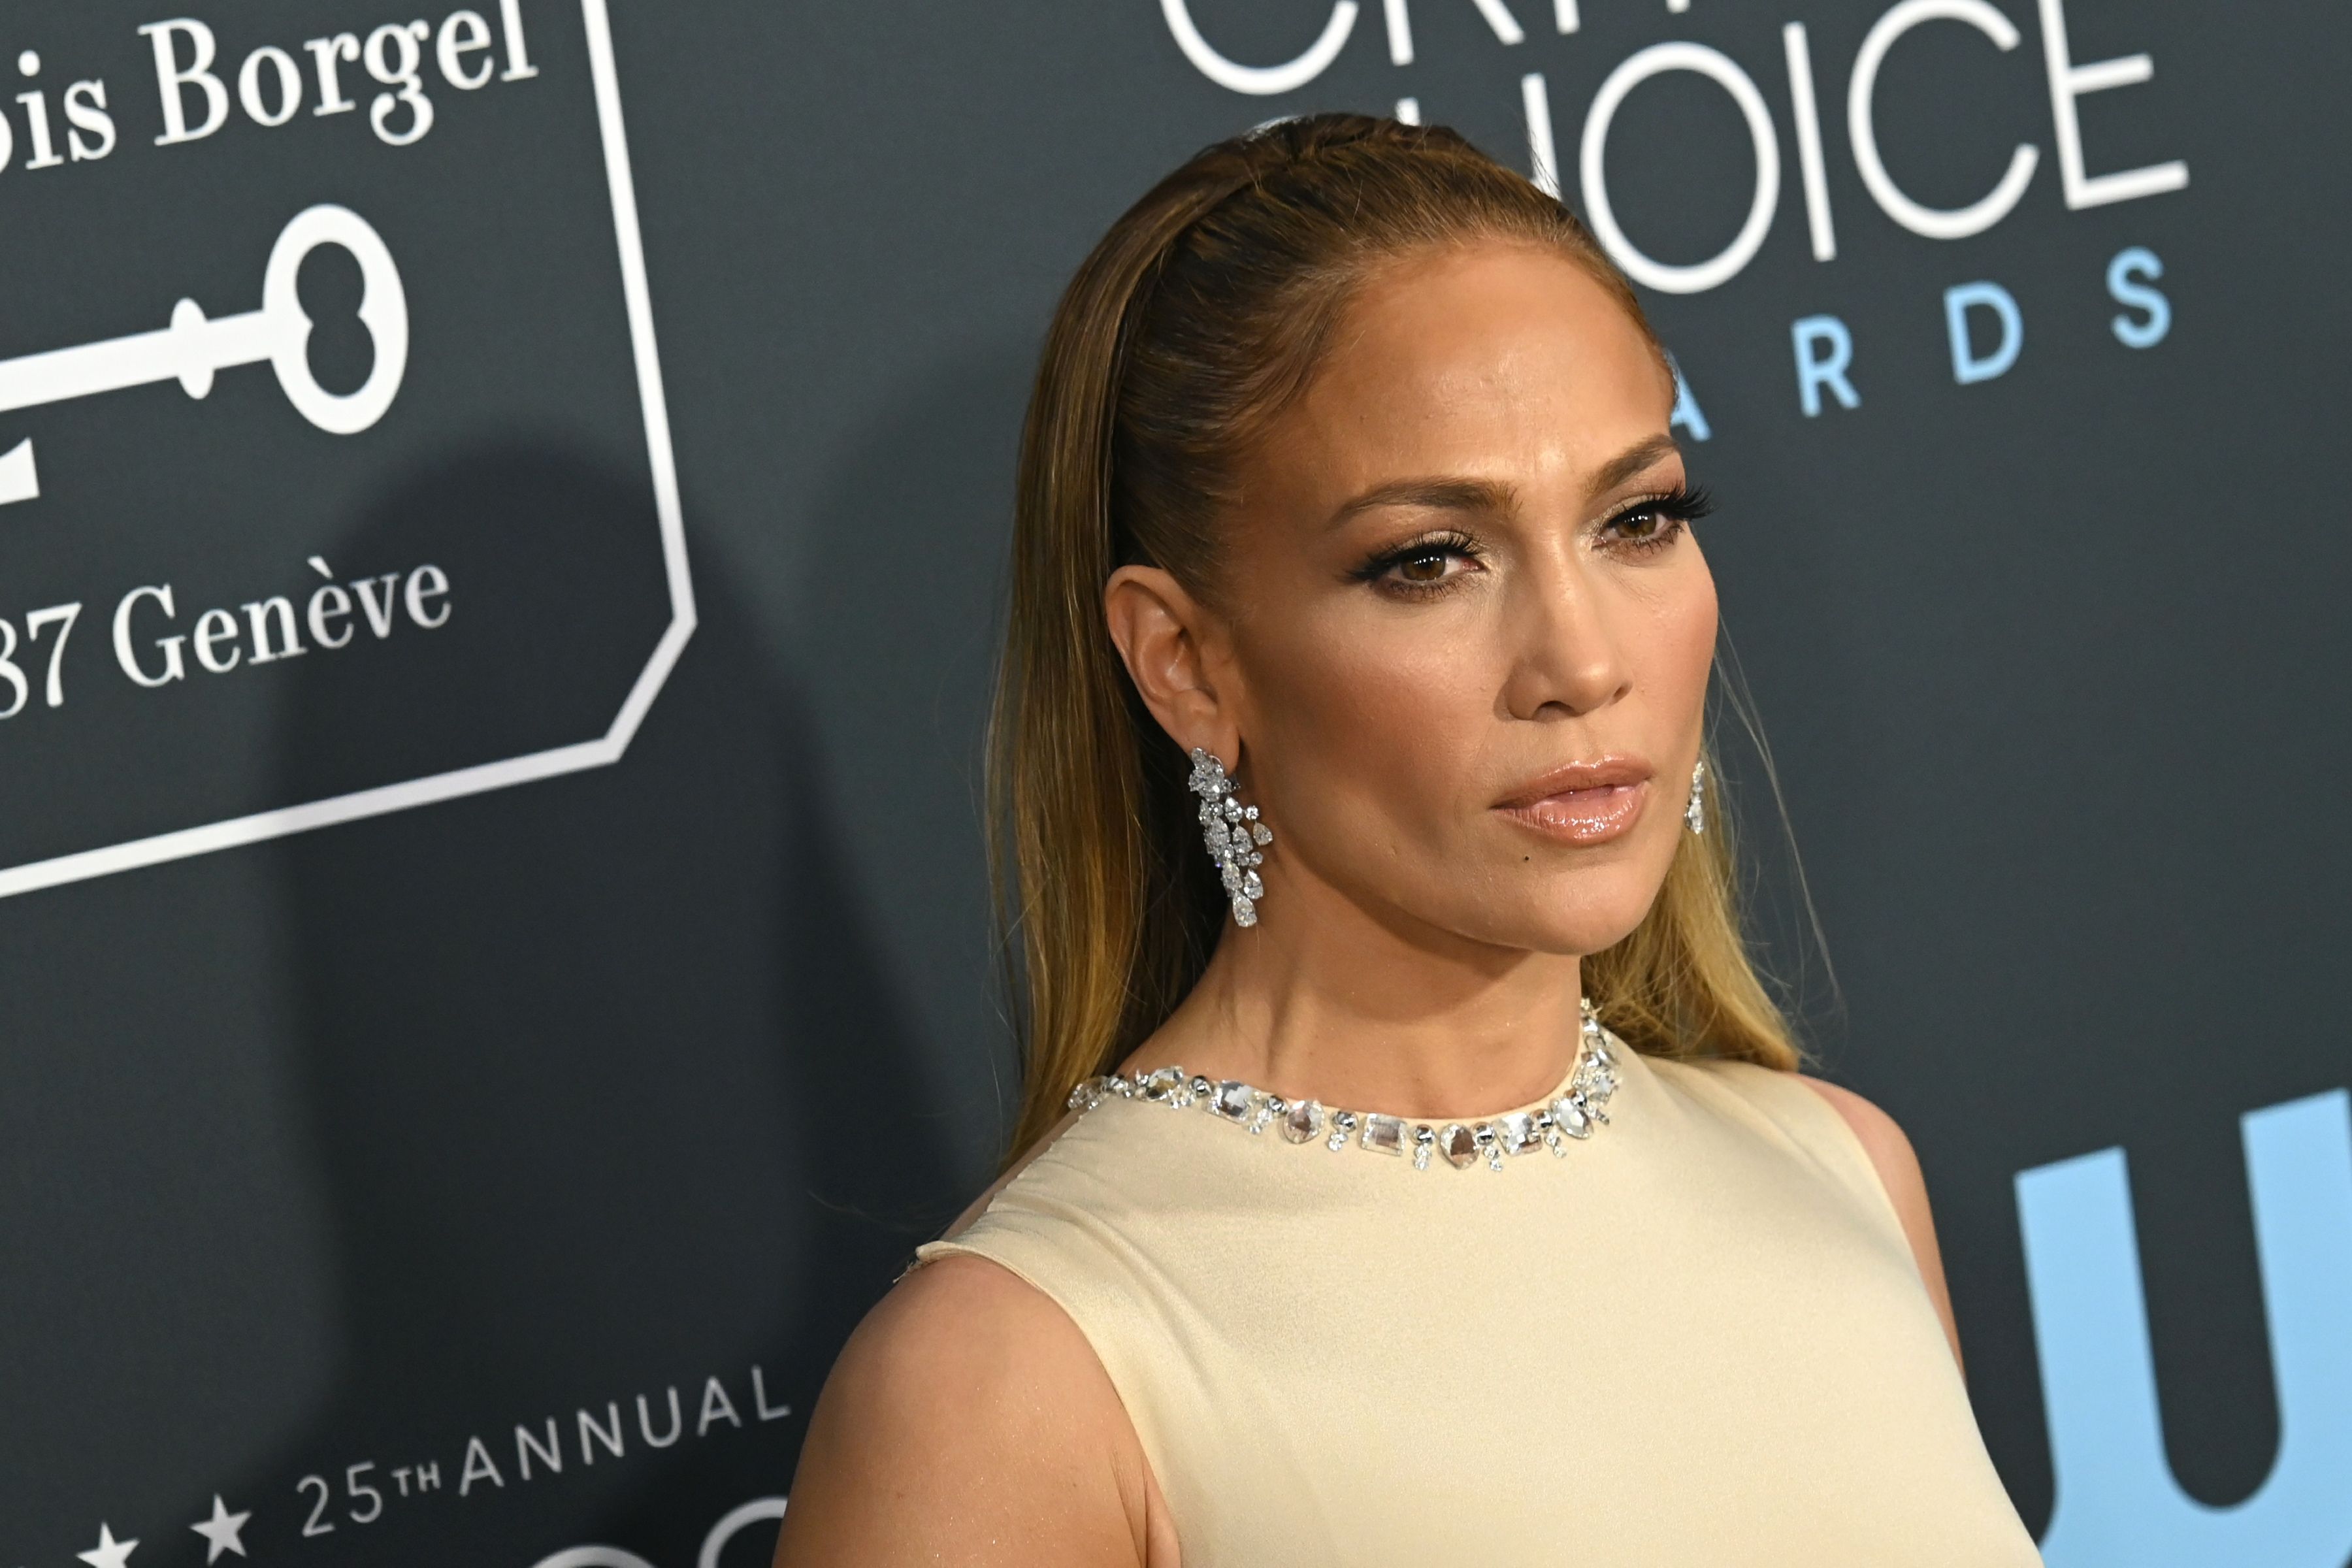 A assistente de Jennifer Lopez desistiu e trabalhou para Mariah Carey, por causa de seu ódio pelo ex-Casper Smart de J-Lo